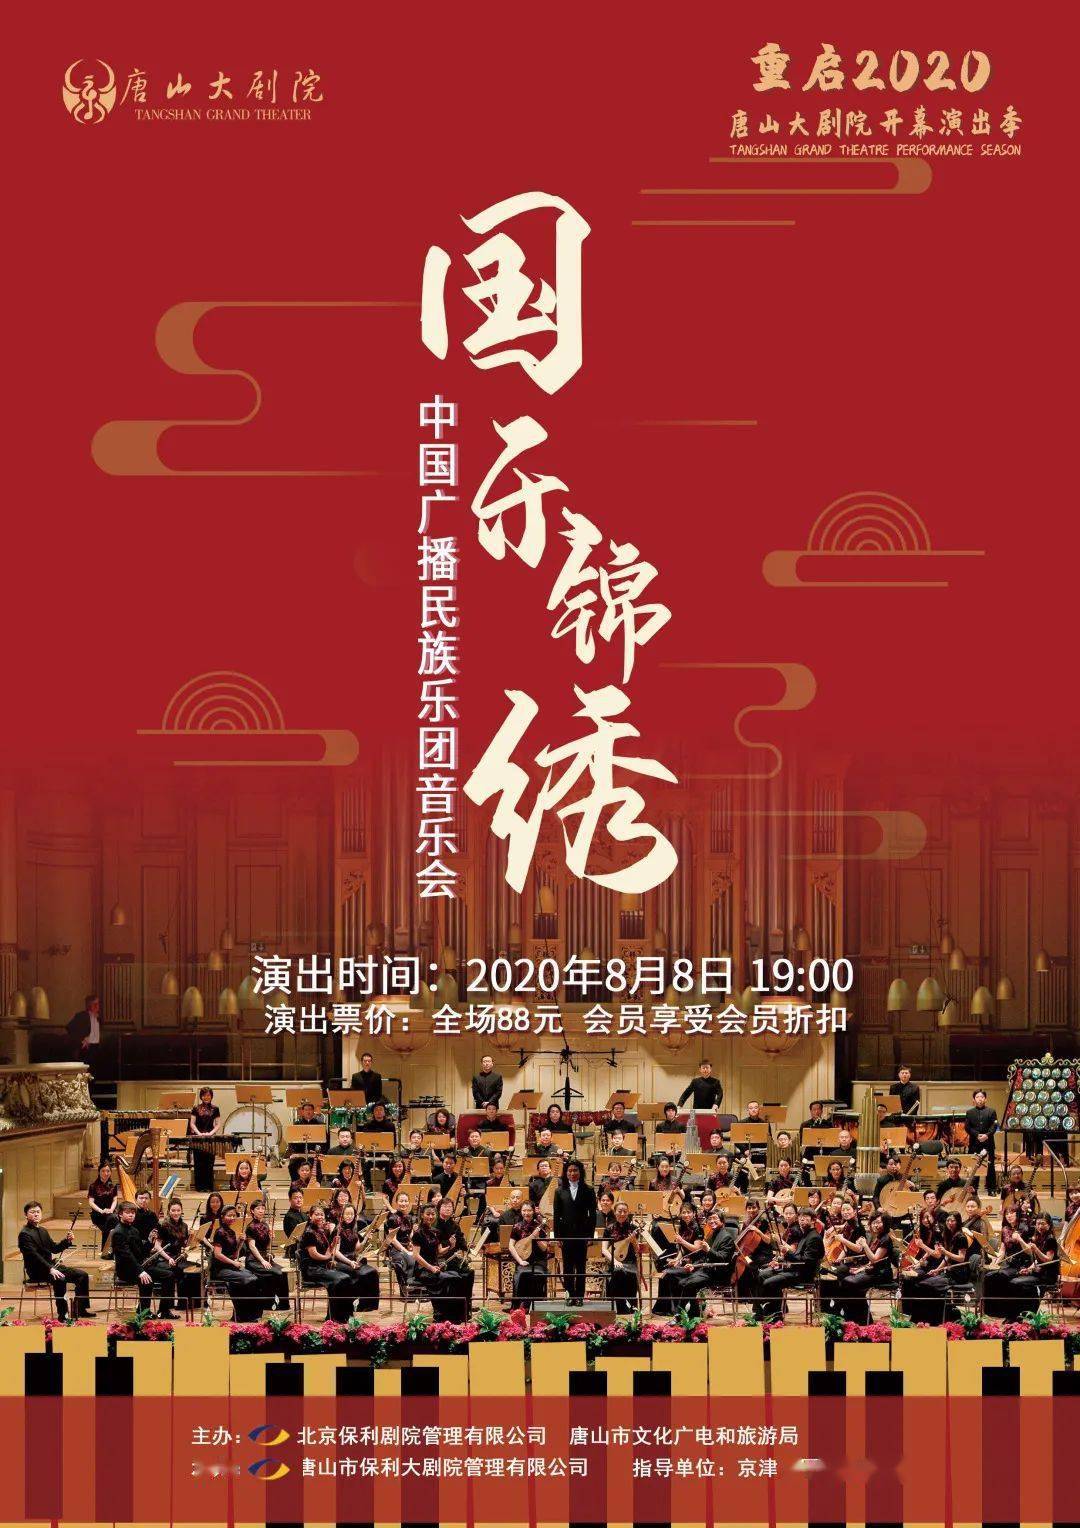 向上滑动阅览 乐团:中国广播民族乐团